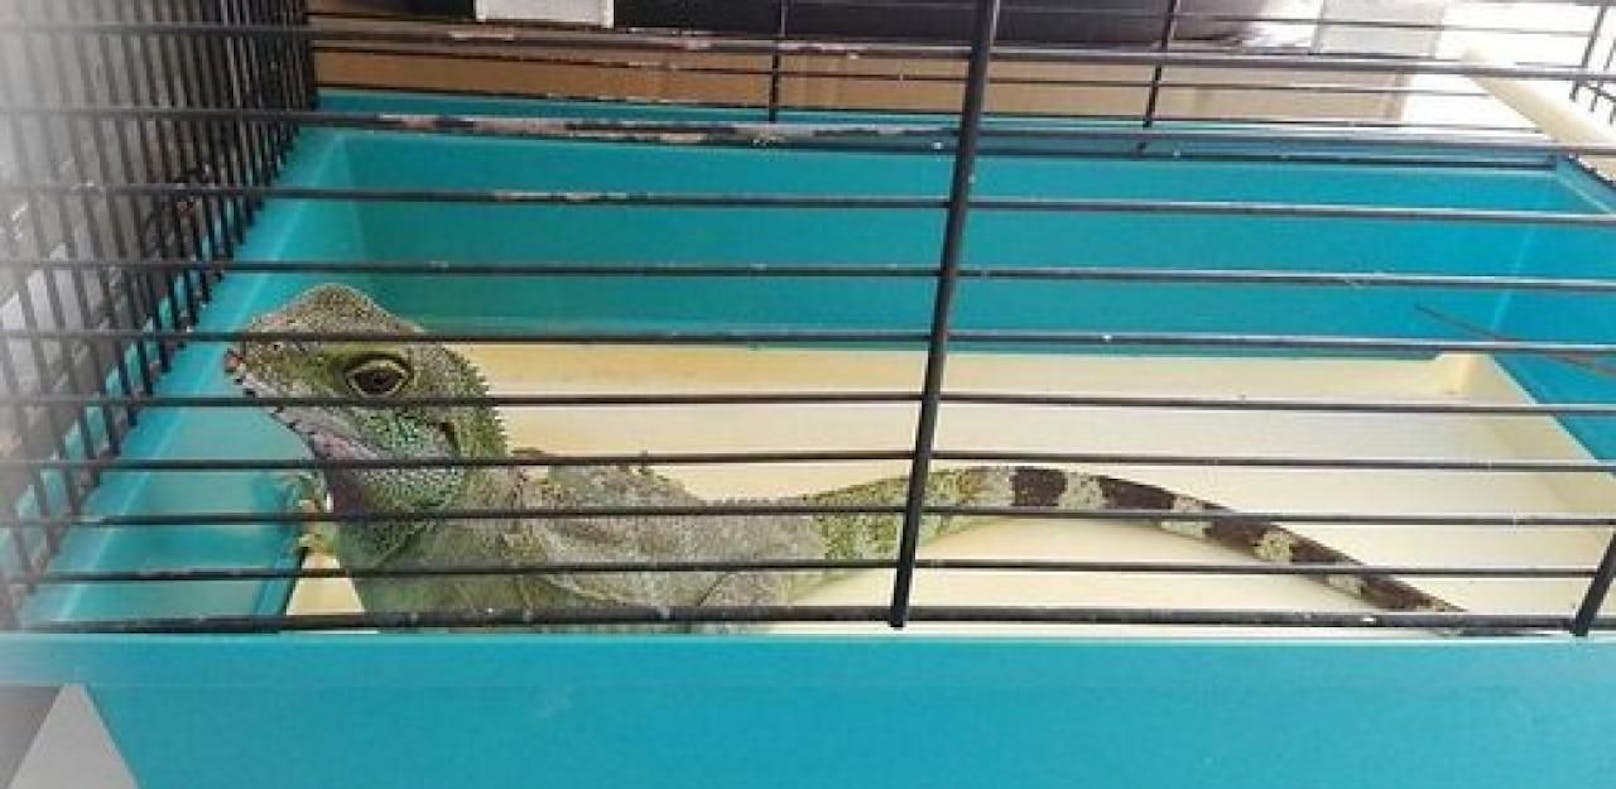 Der grüne Leguan tauchte in einer Tiefgarage auf.